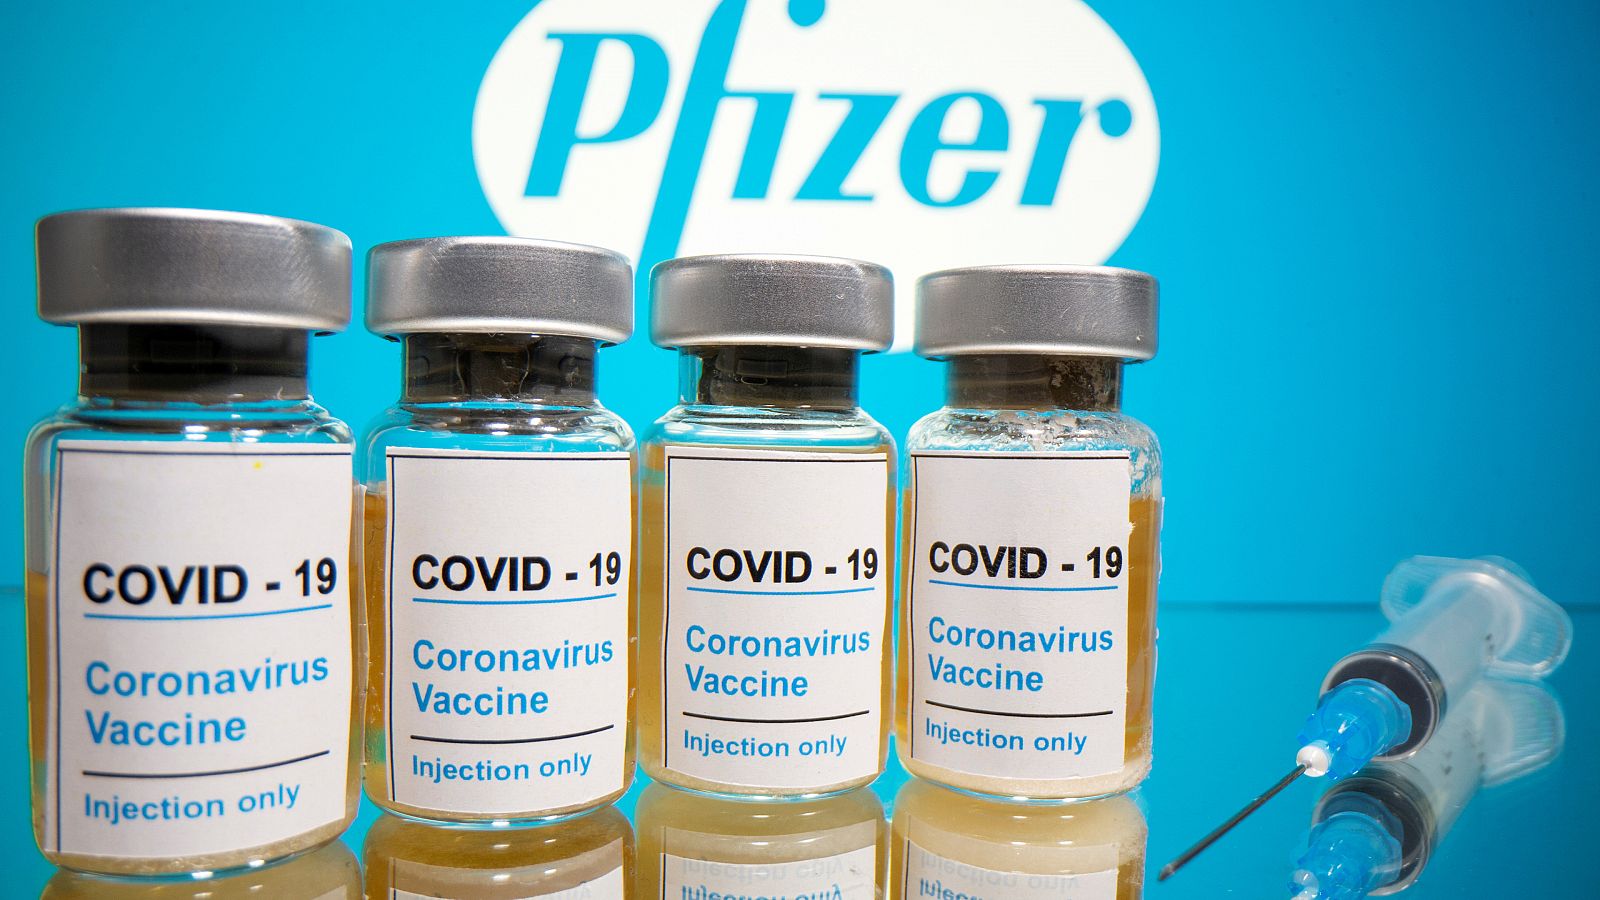 Coronavirus - Pfizer asegura que su vacuna contra la COVID-19 tiene una efectividad superior al 90%